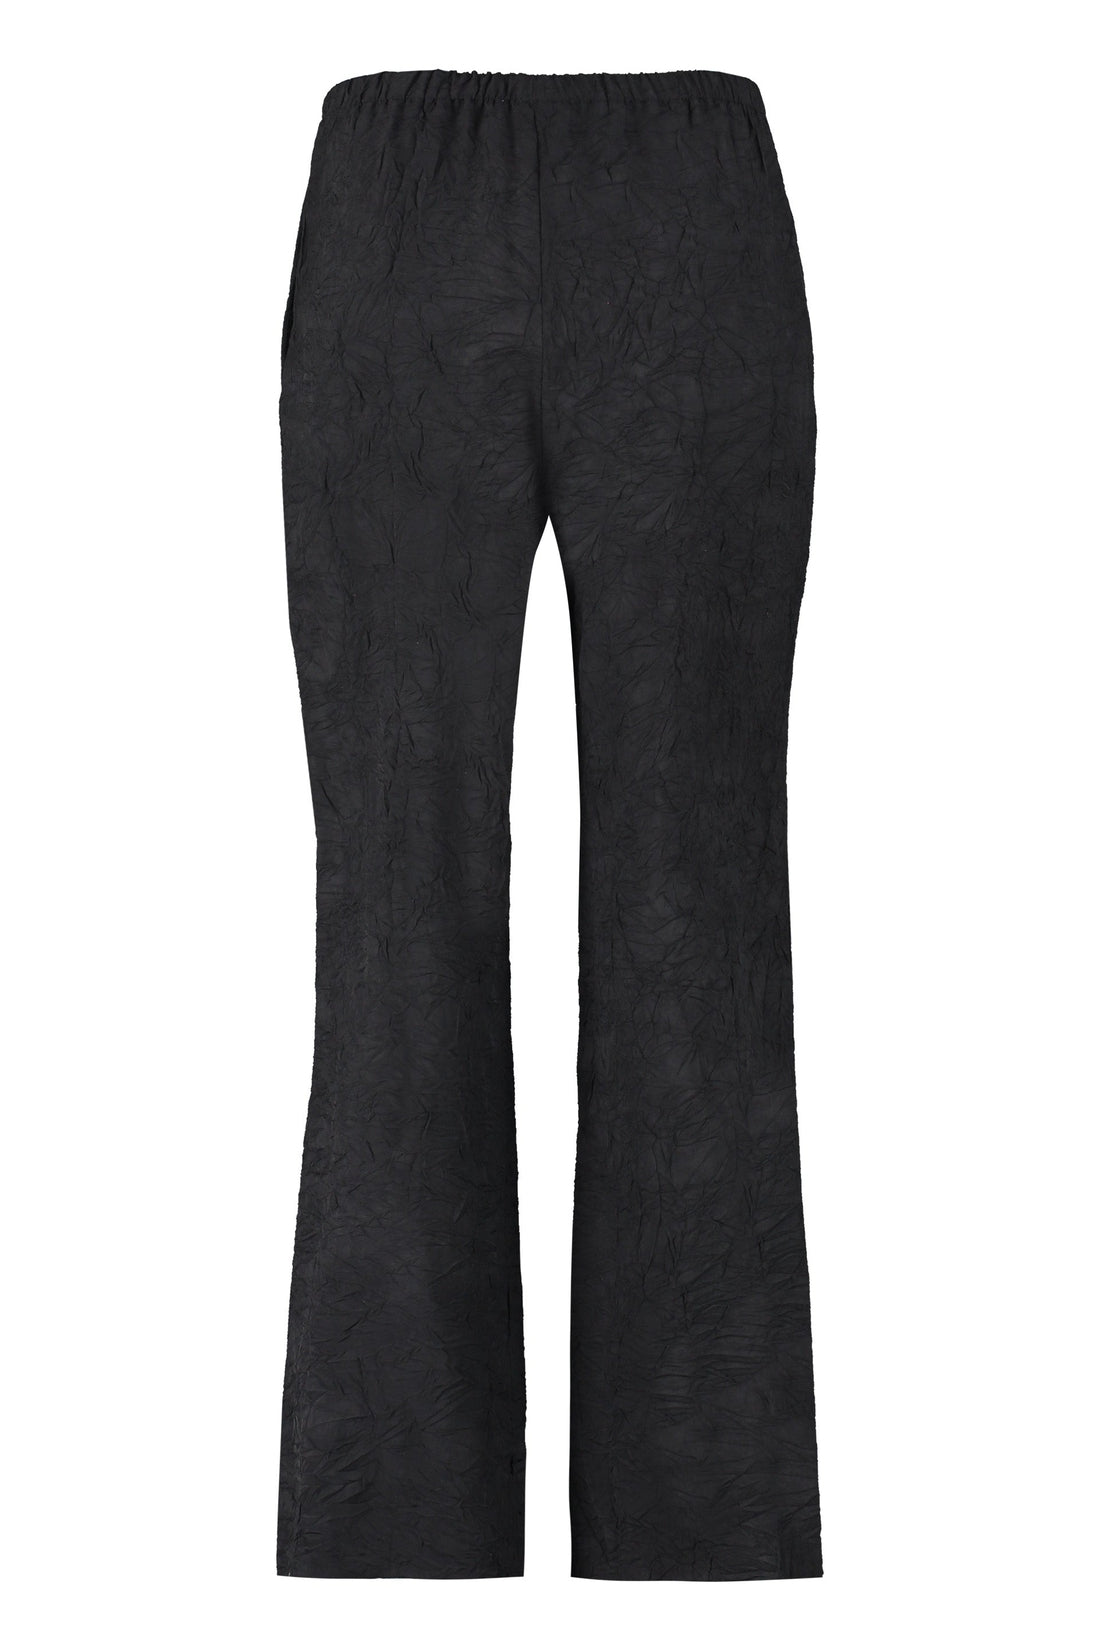 Nanushka-OUTLET-SALE-Lenthe trousers-ARCHIVIST